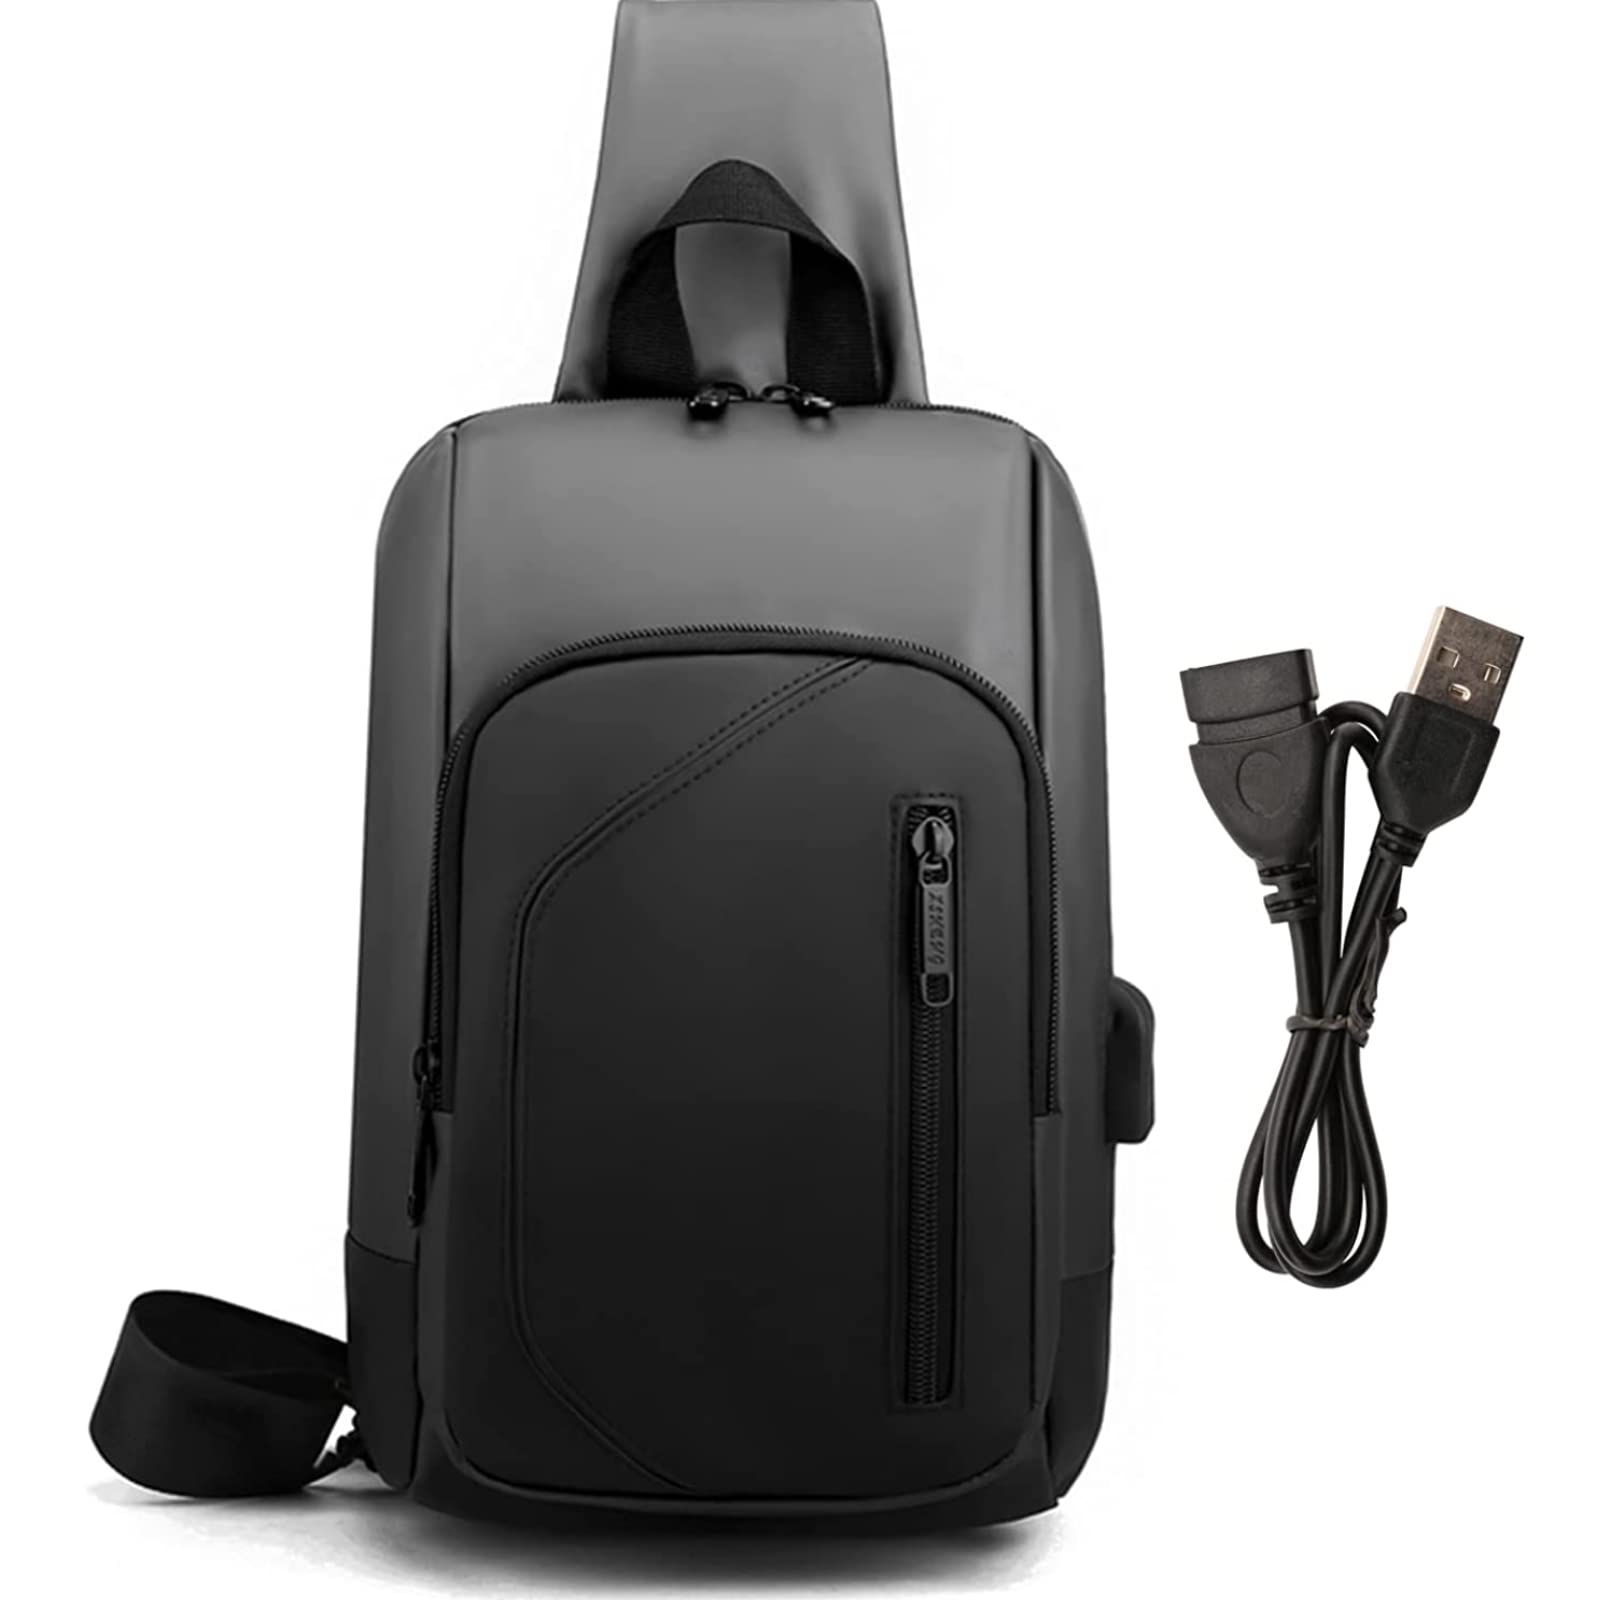 ショルダーバッグ 斜め掛け 大容量 斜めがけカバン 撥水 USBポート付き iPad収納可能 多機能 ワンショルダー 軽量 おしゃれ 通学 通勤 旅行 男女兼用